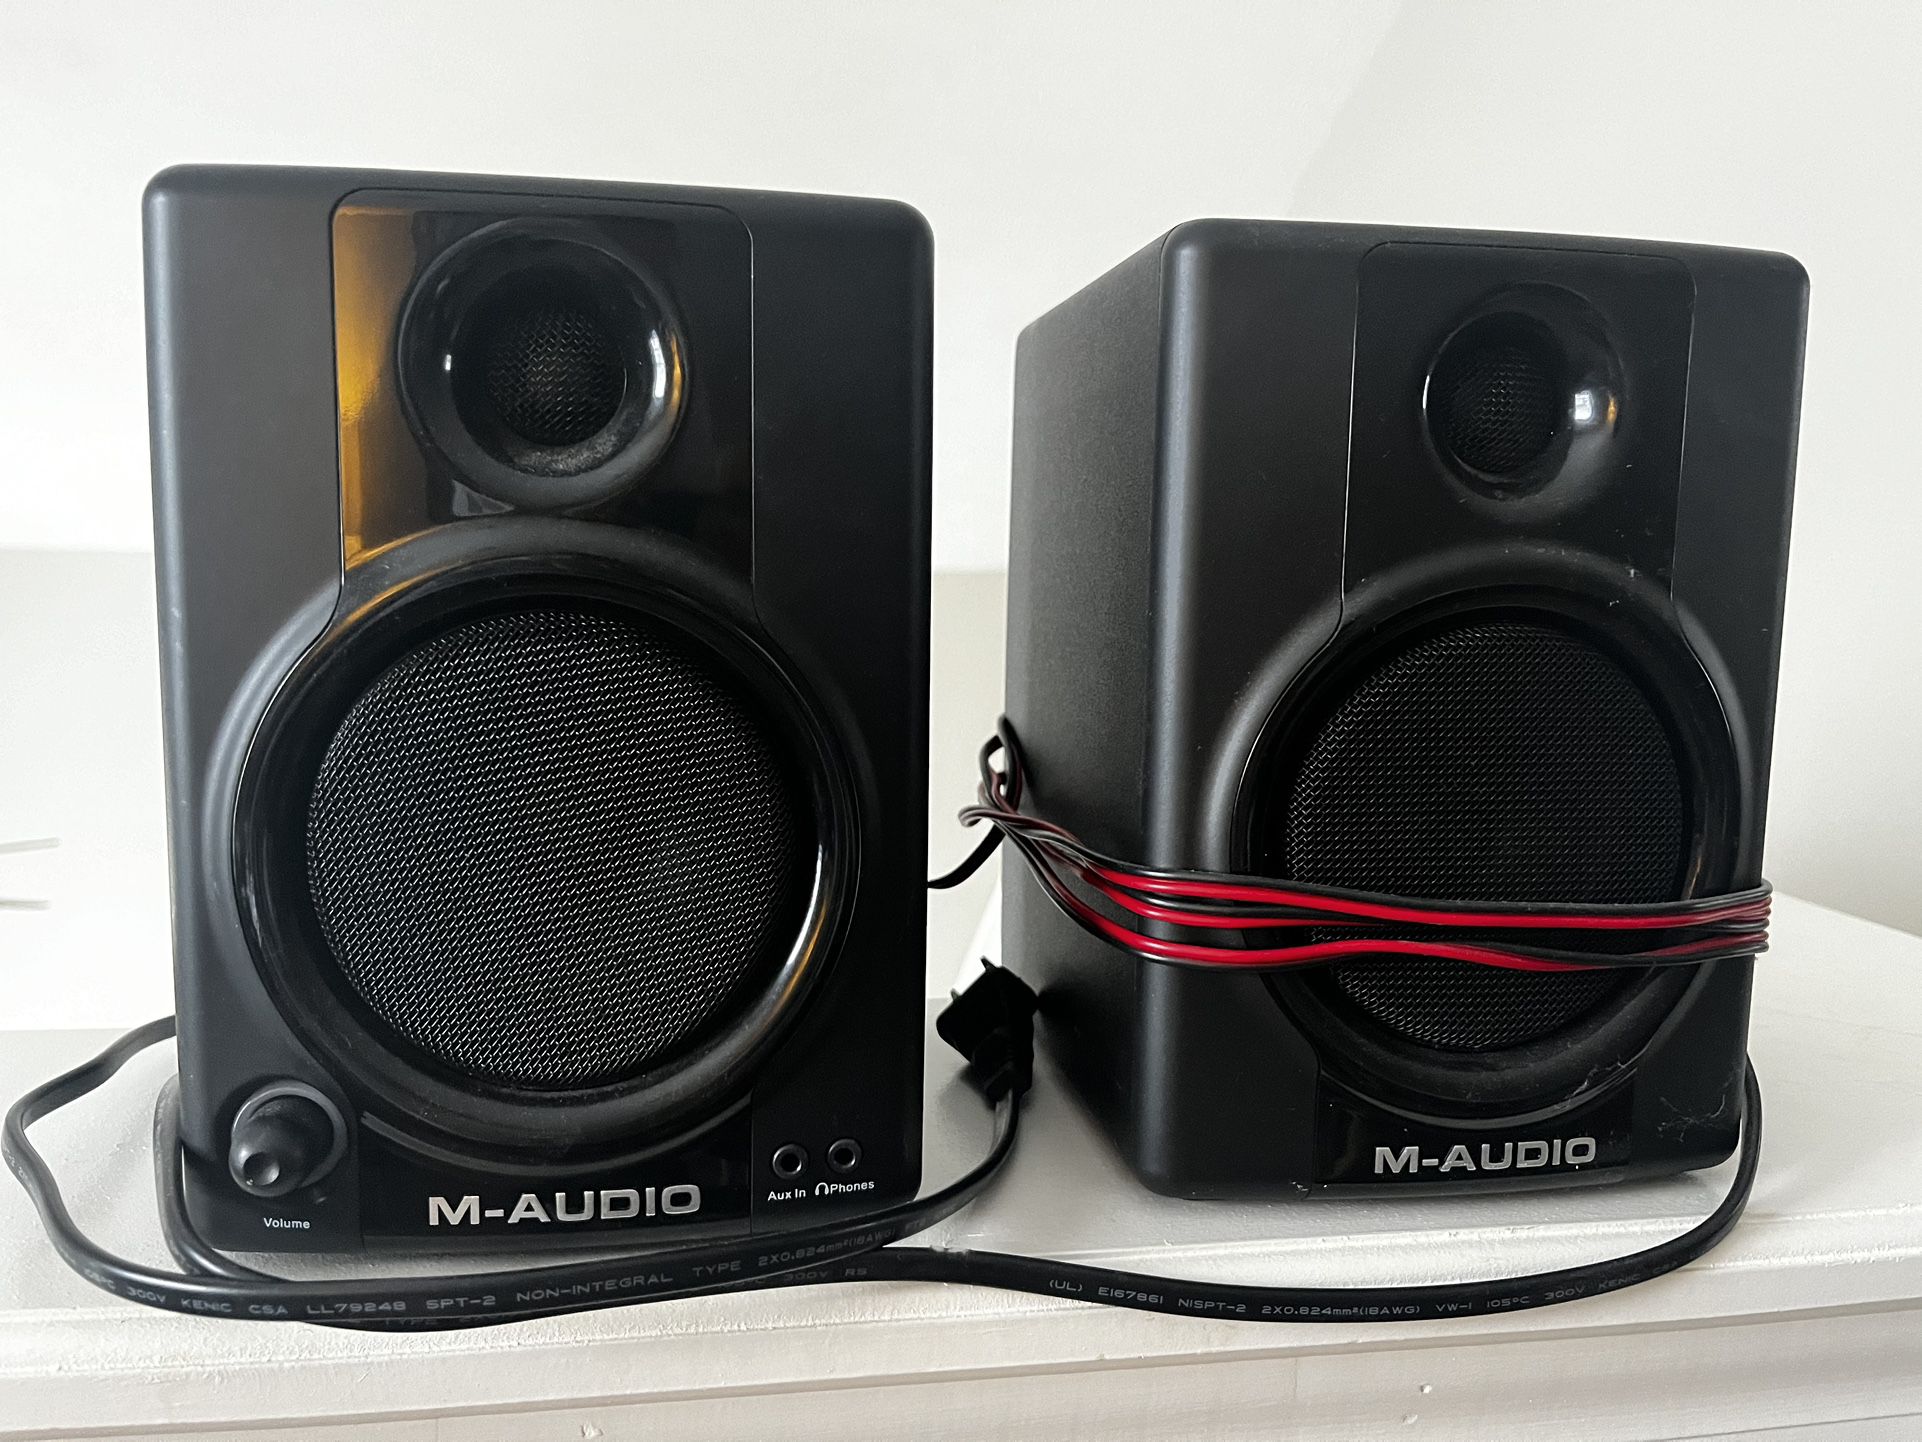 M-Audio A30 Multimedia Speakers